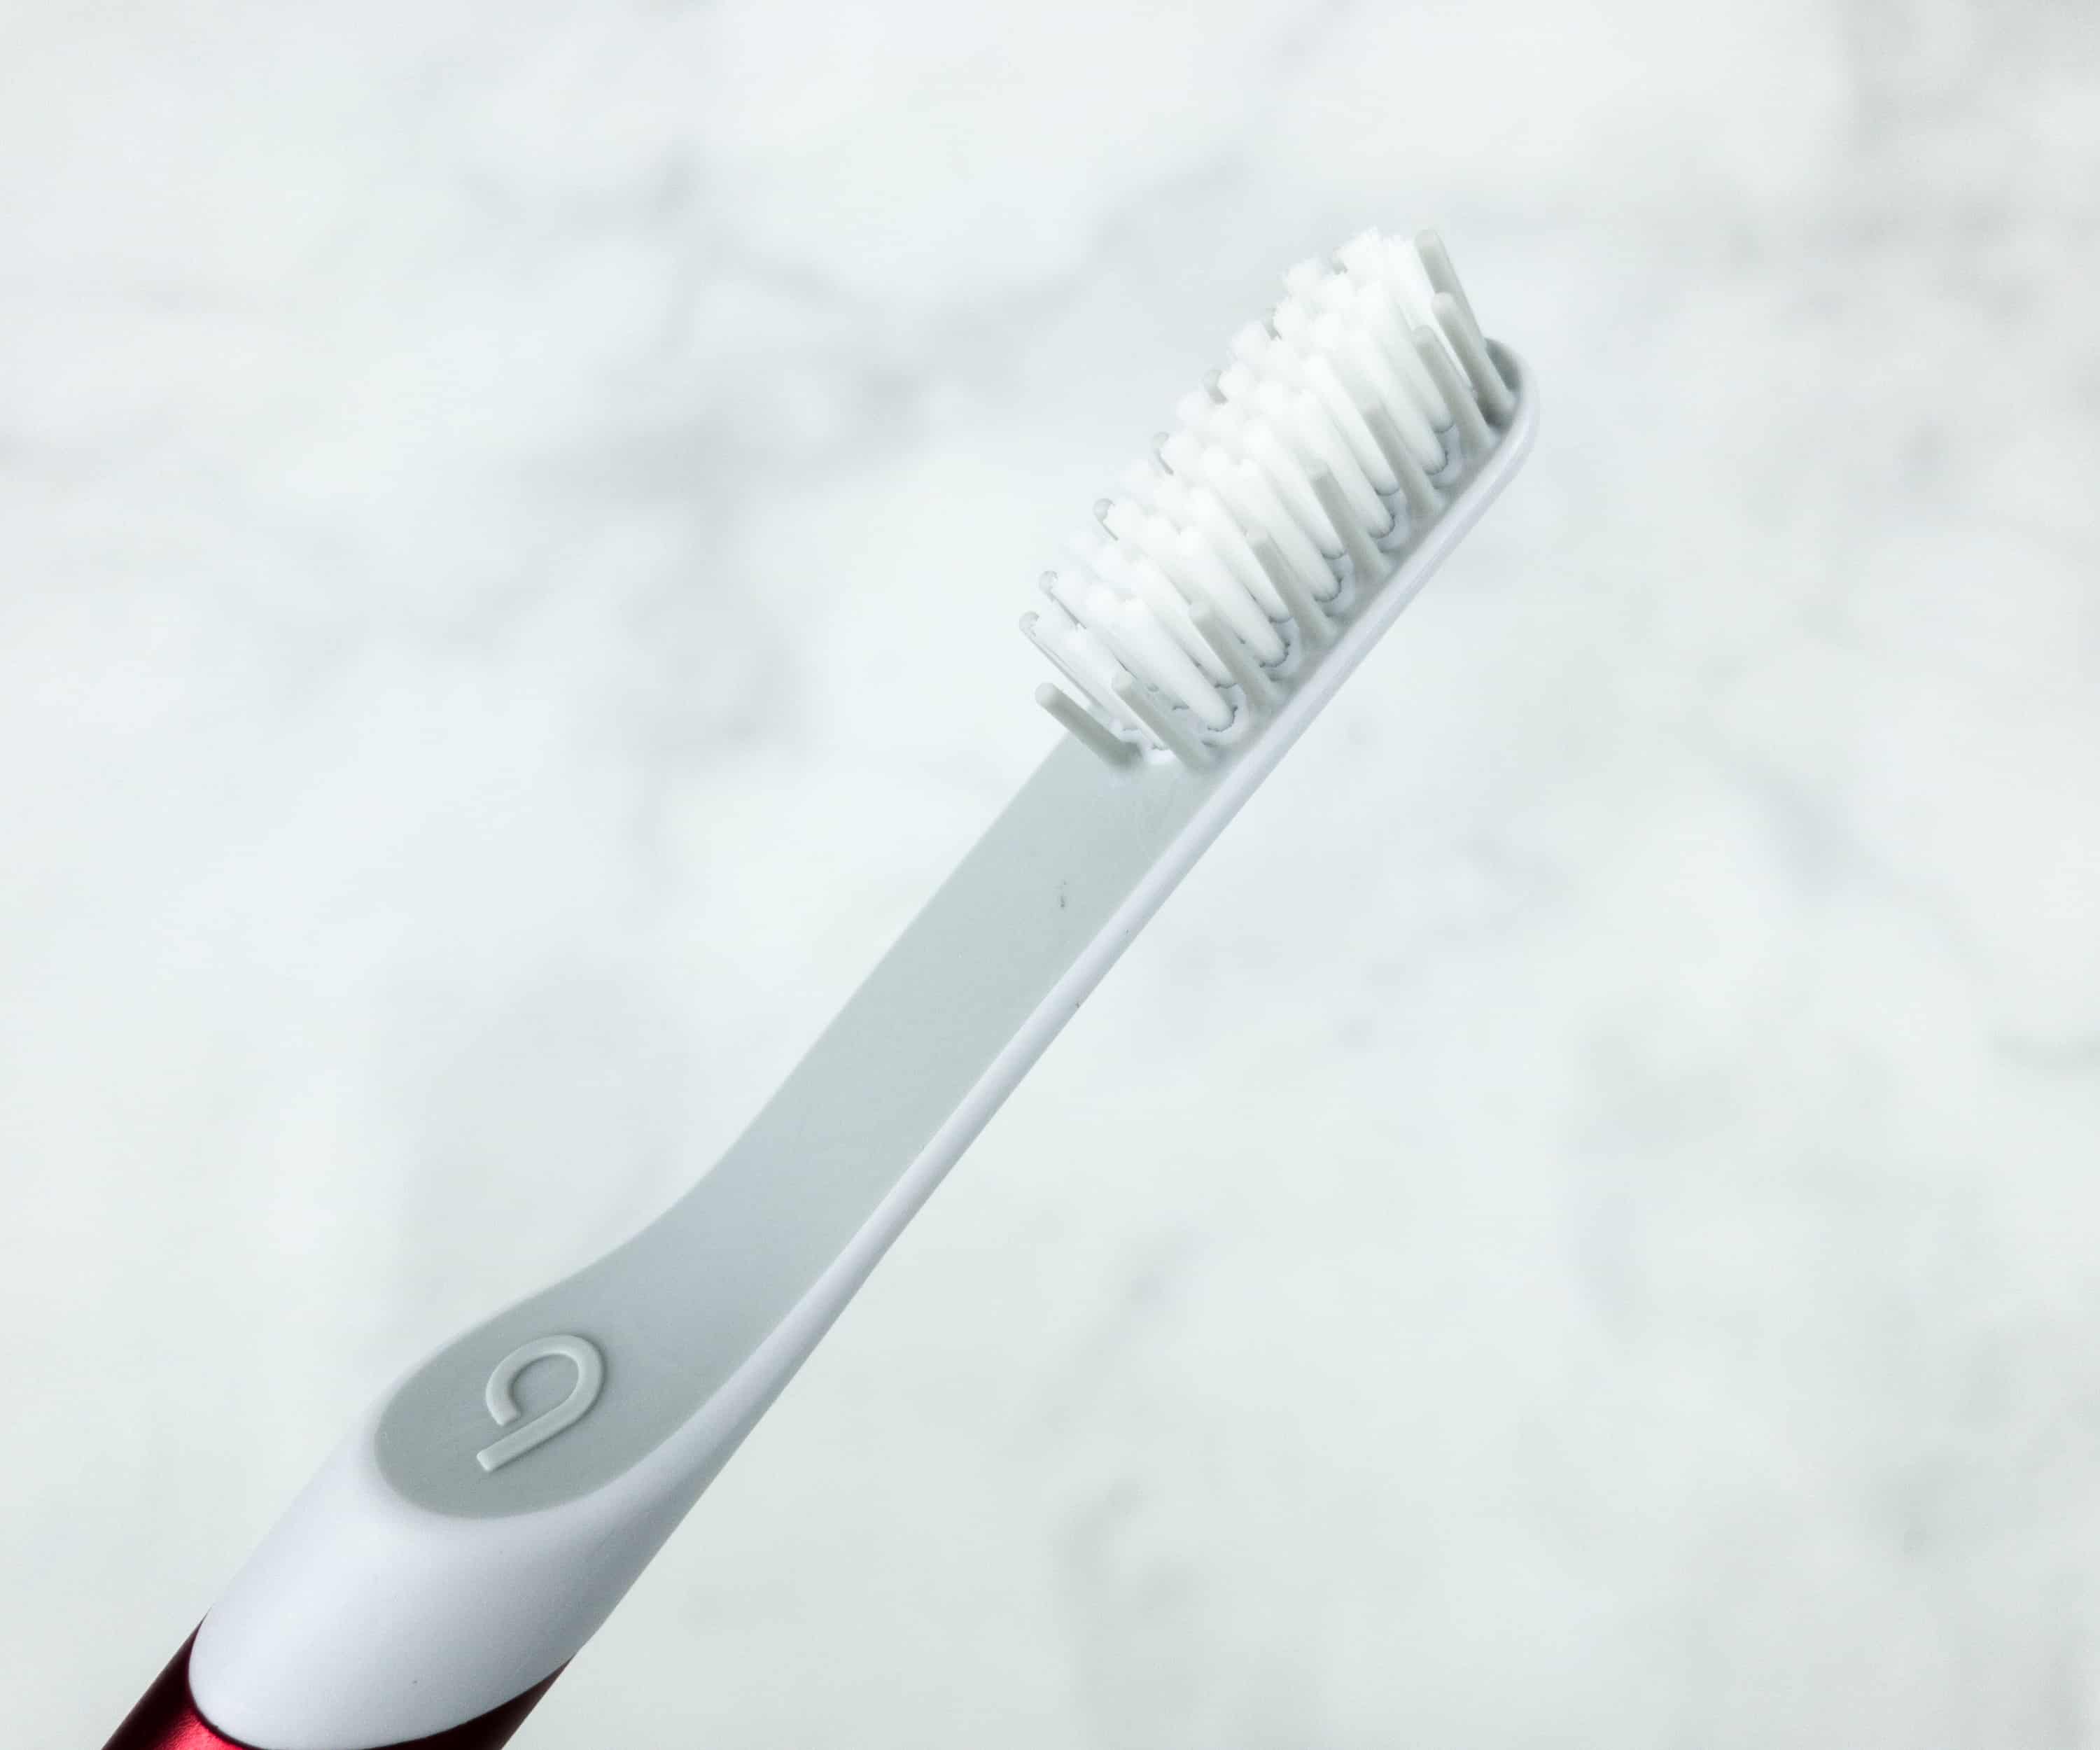 quip toothbrush reviews 2018 reddit